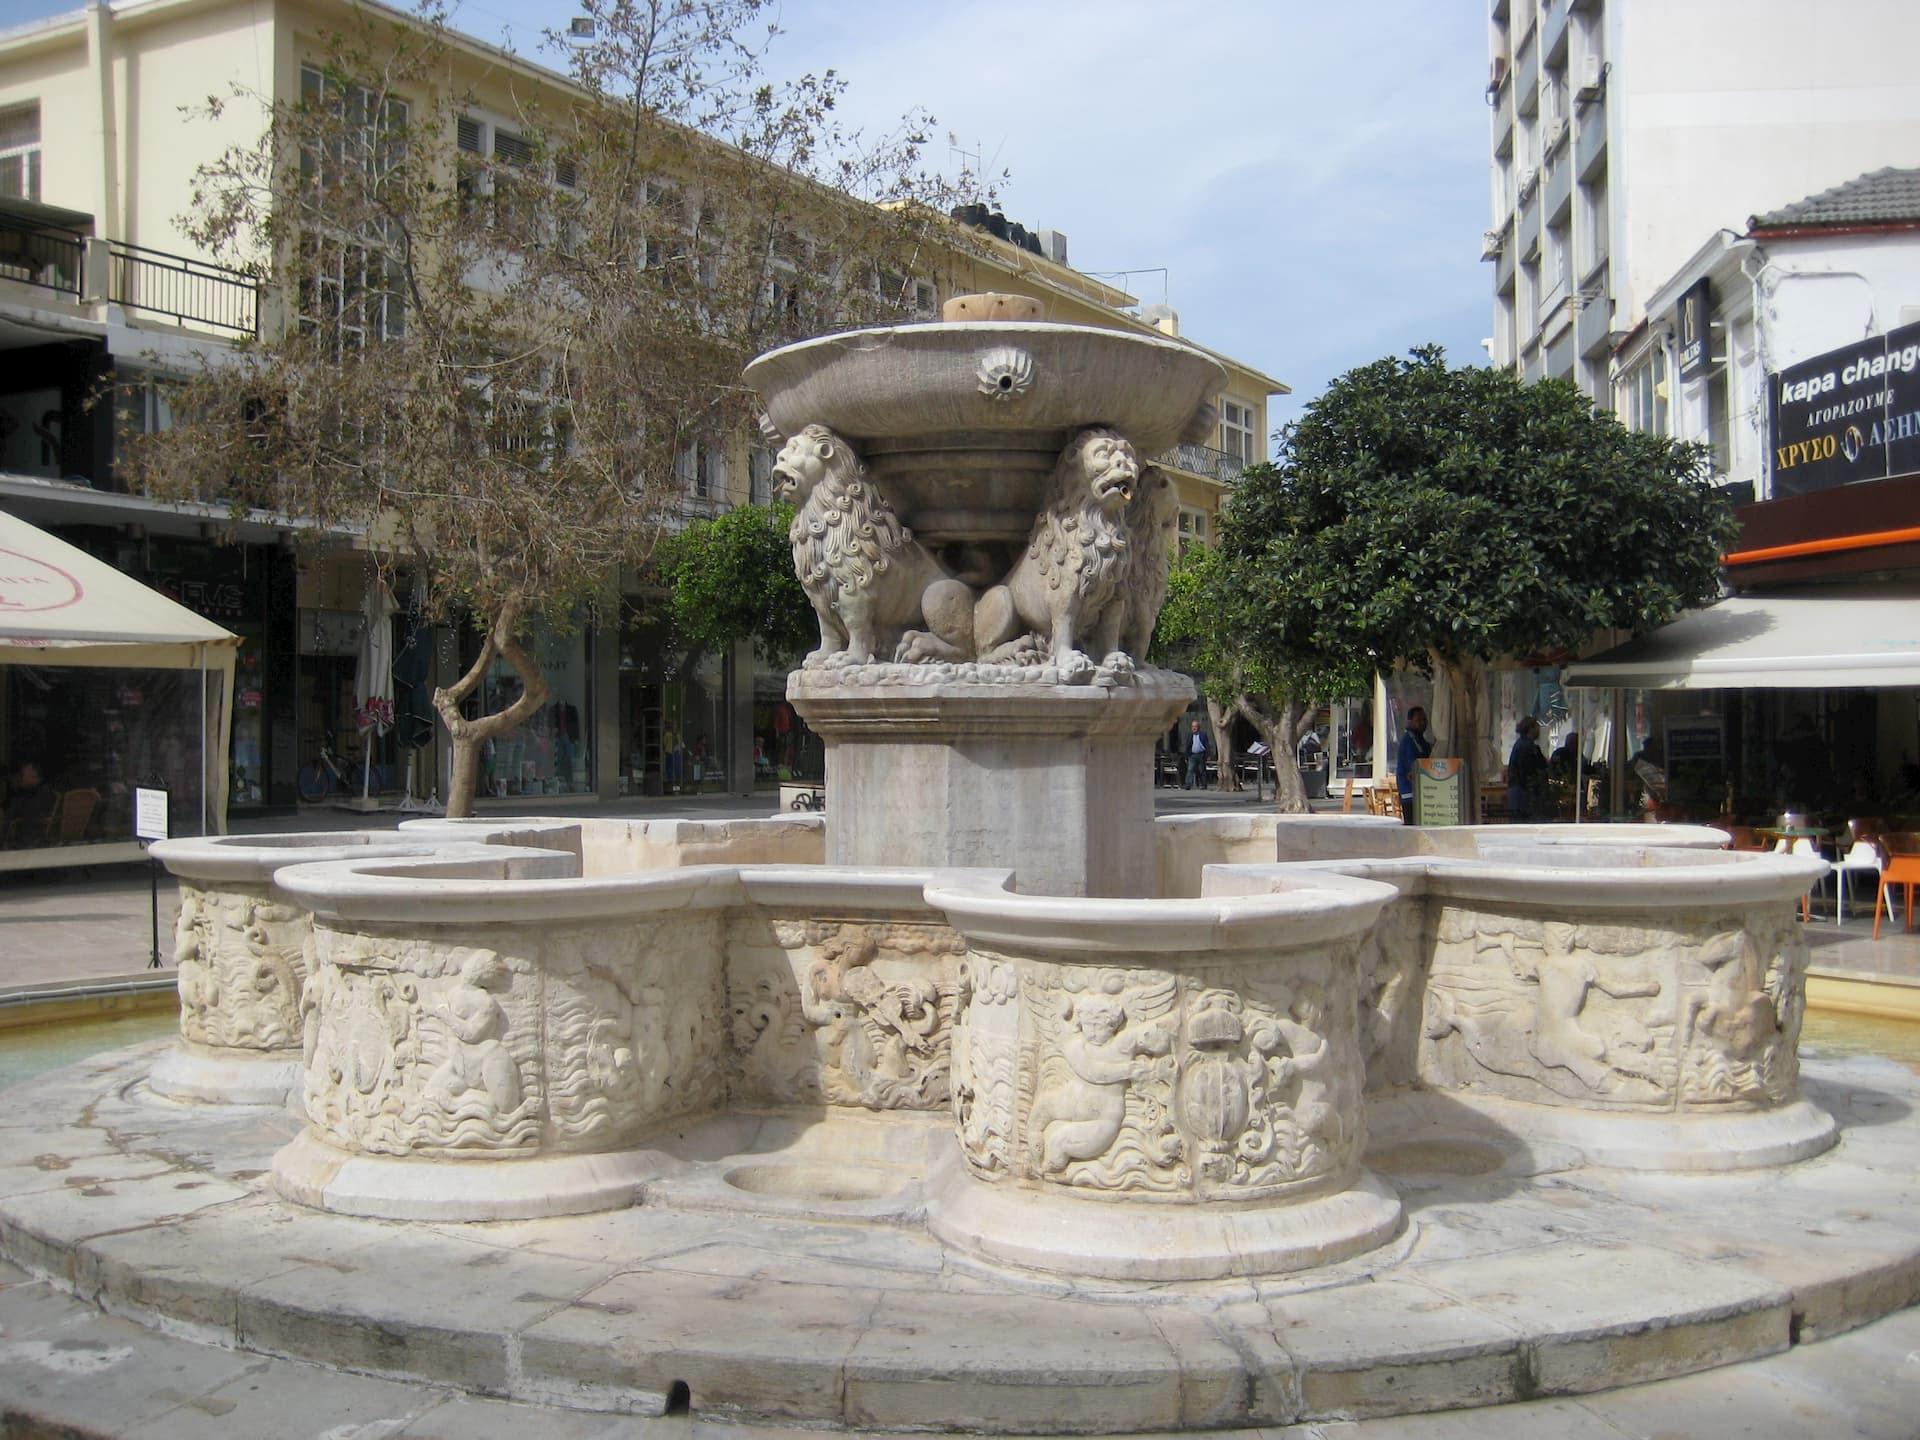 Η Κρήνη Μοροζίνι βρίσκεται στη πλατεία Λιονταριών απέναντι από τη Βασιλική του Αγίου Μάρκου, στο κέντρο του Ηρακλείου